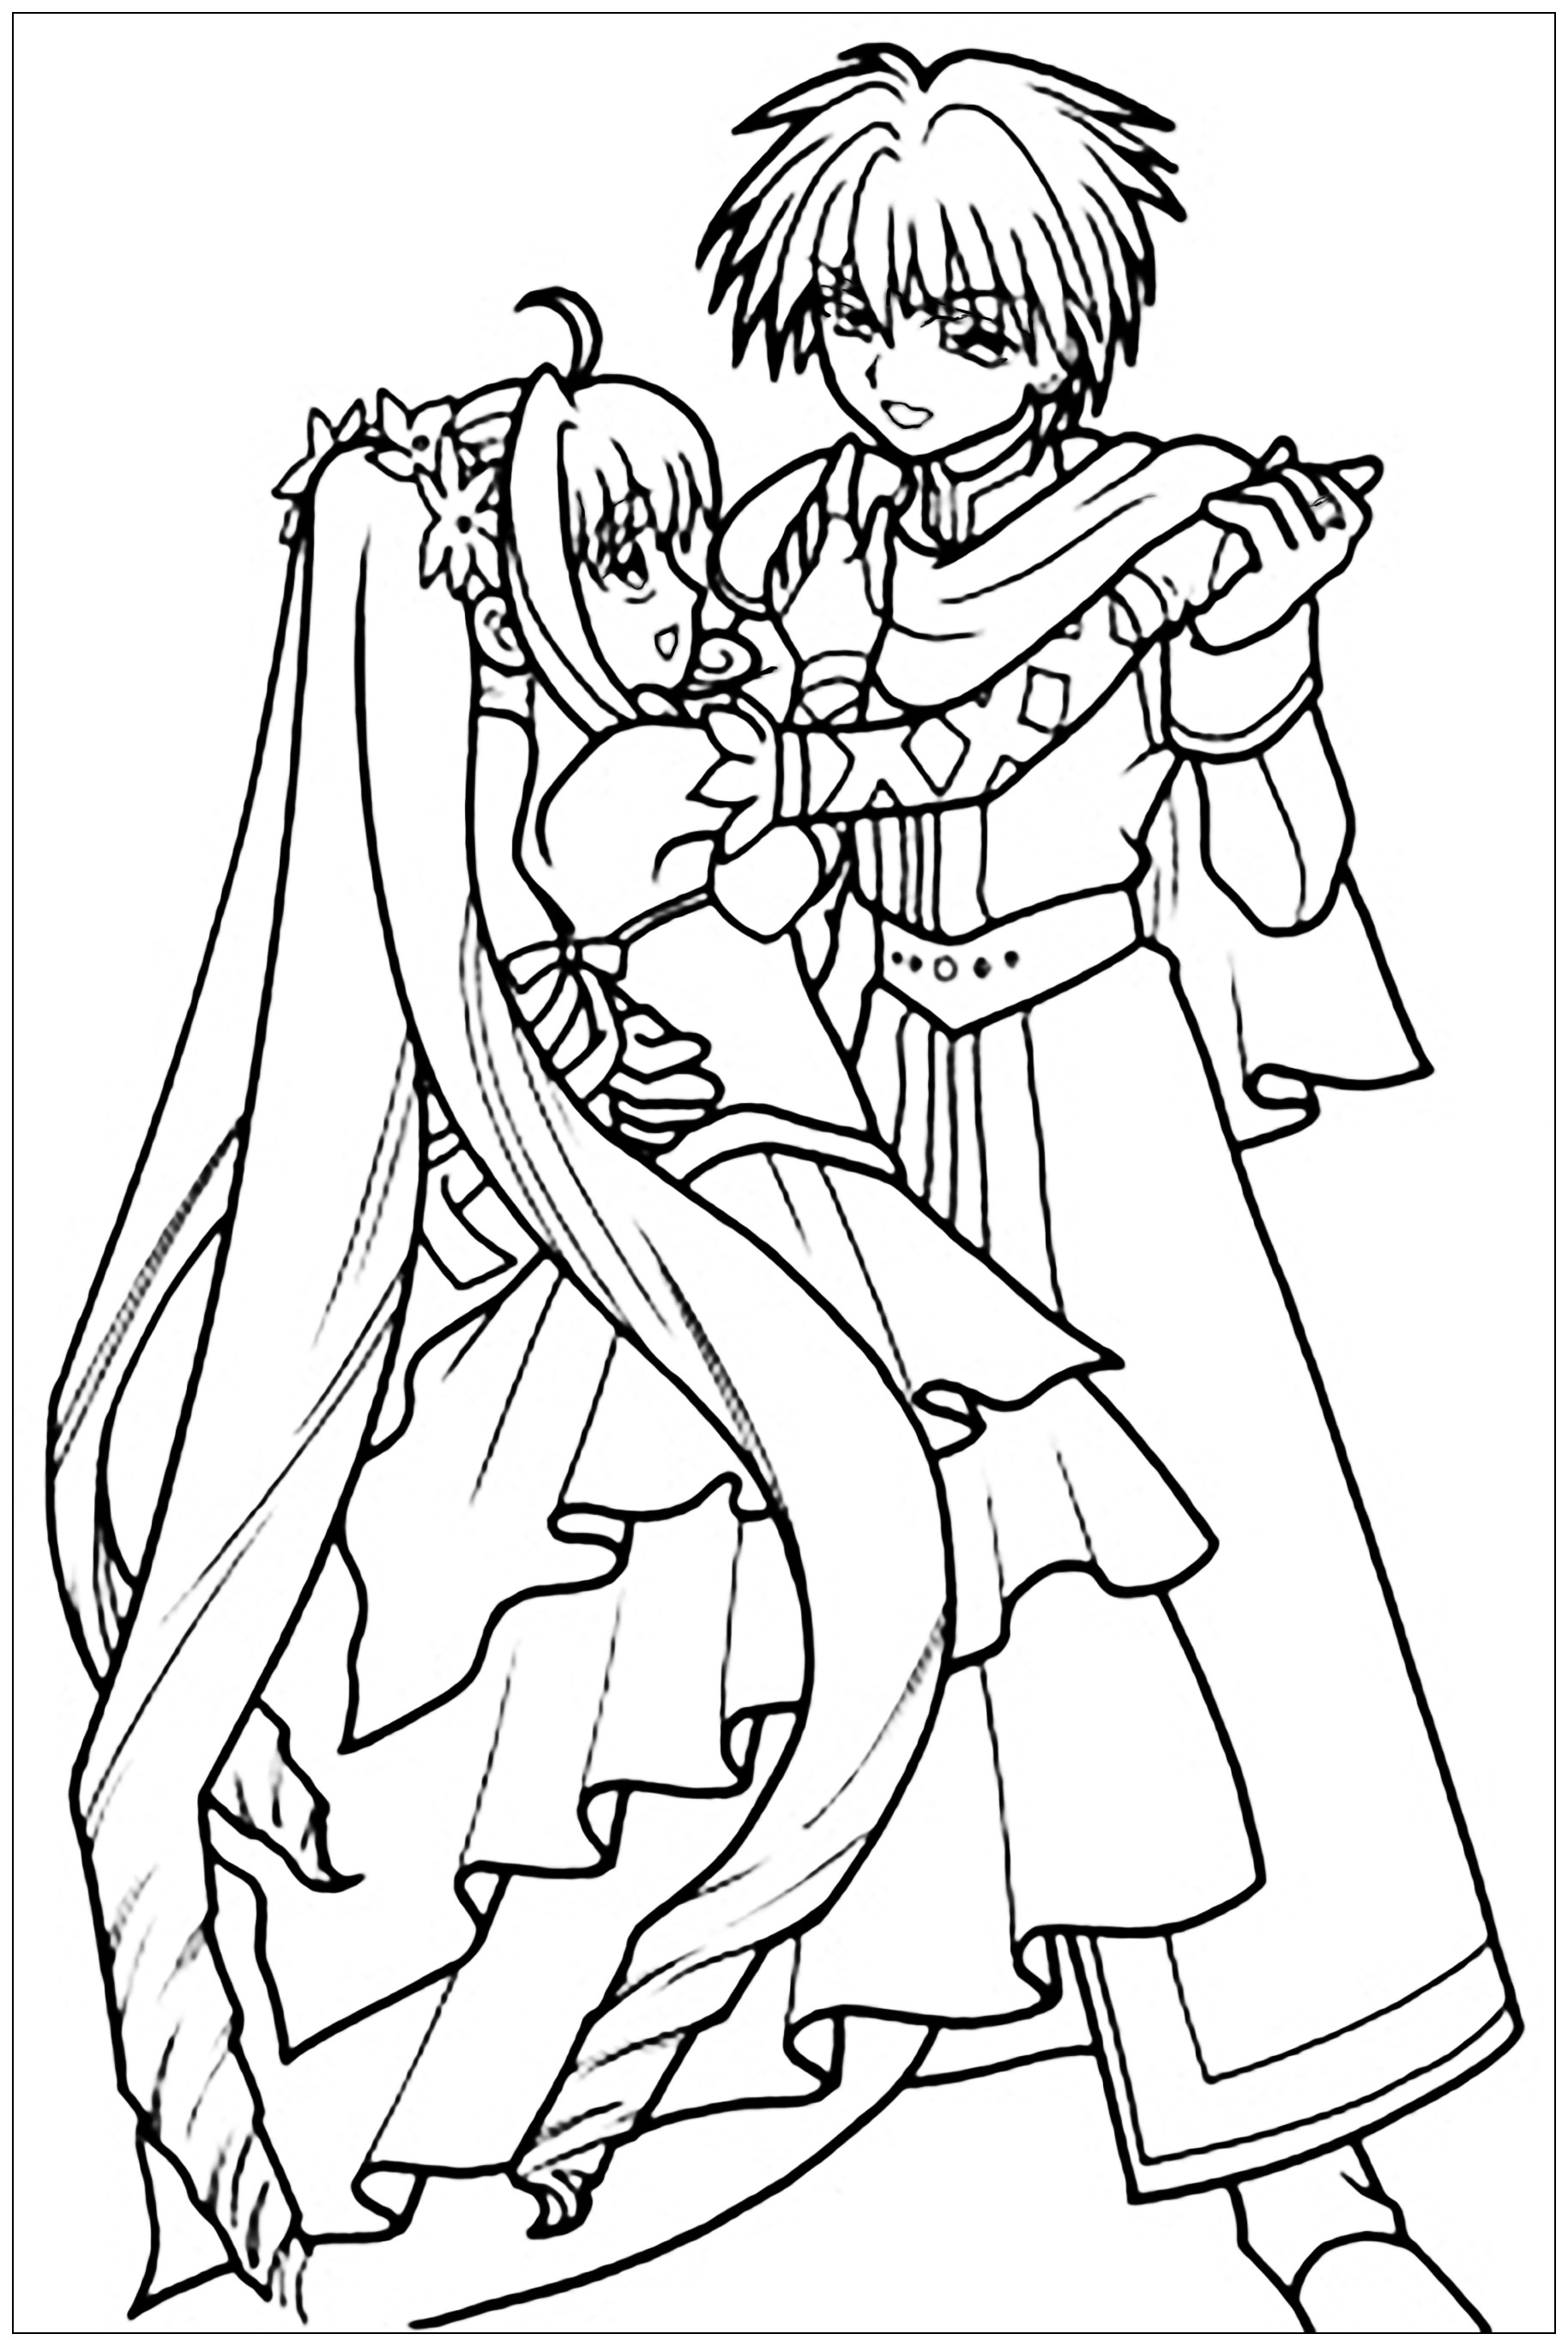 Un dessin au style Manga d'une jeune fille et d'un jeune garçon en train de danser, en tenue de bal